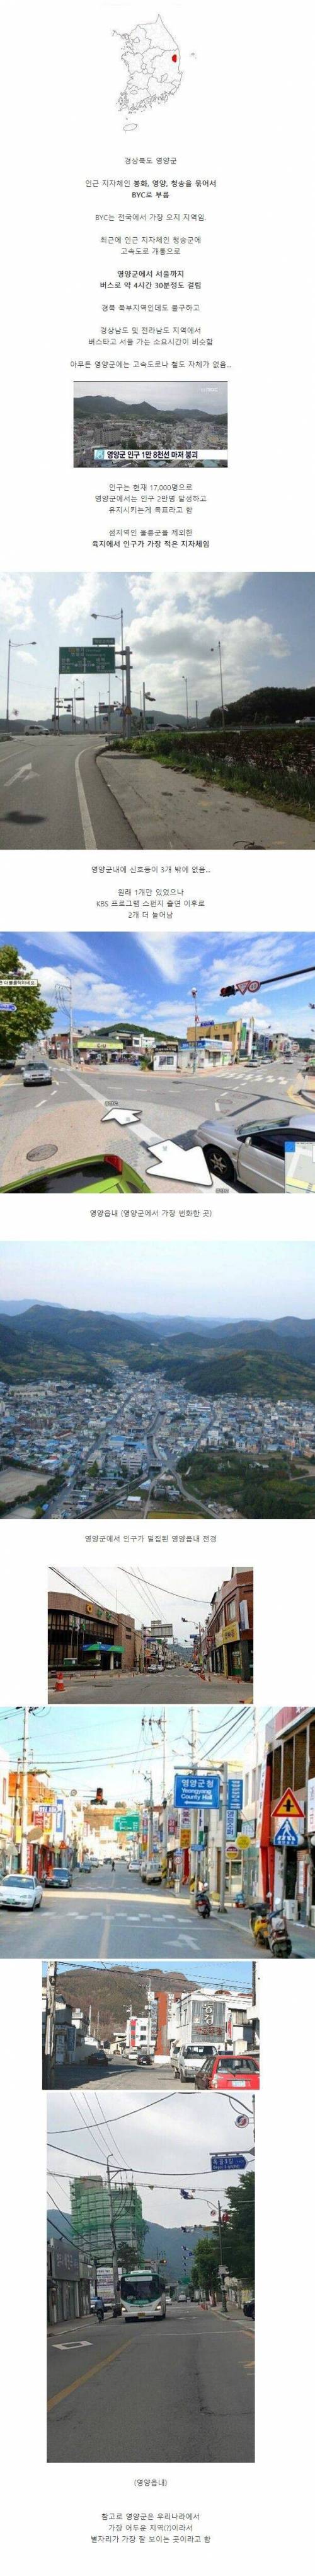 한국에서 가장 시골인 곳.jpg